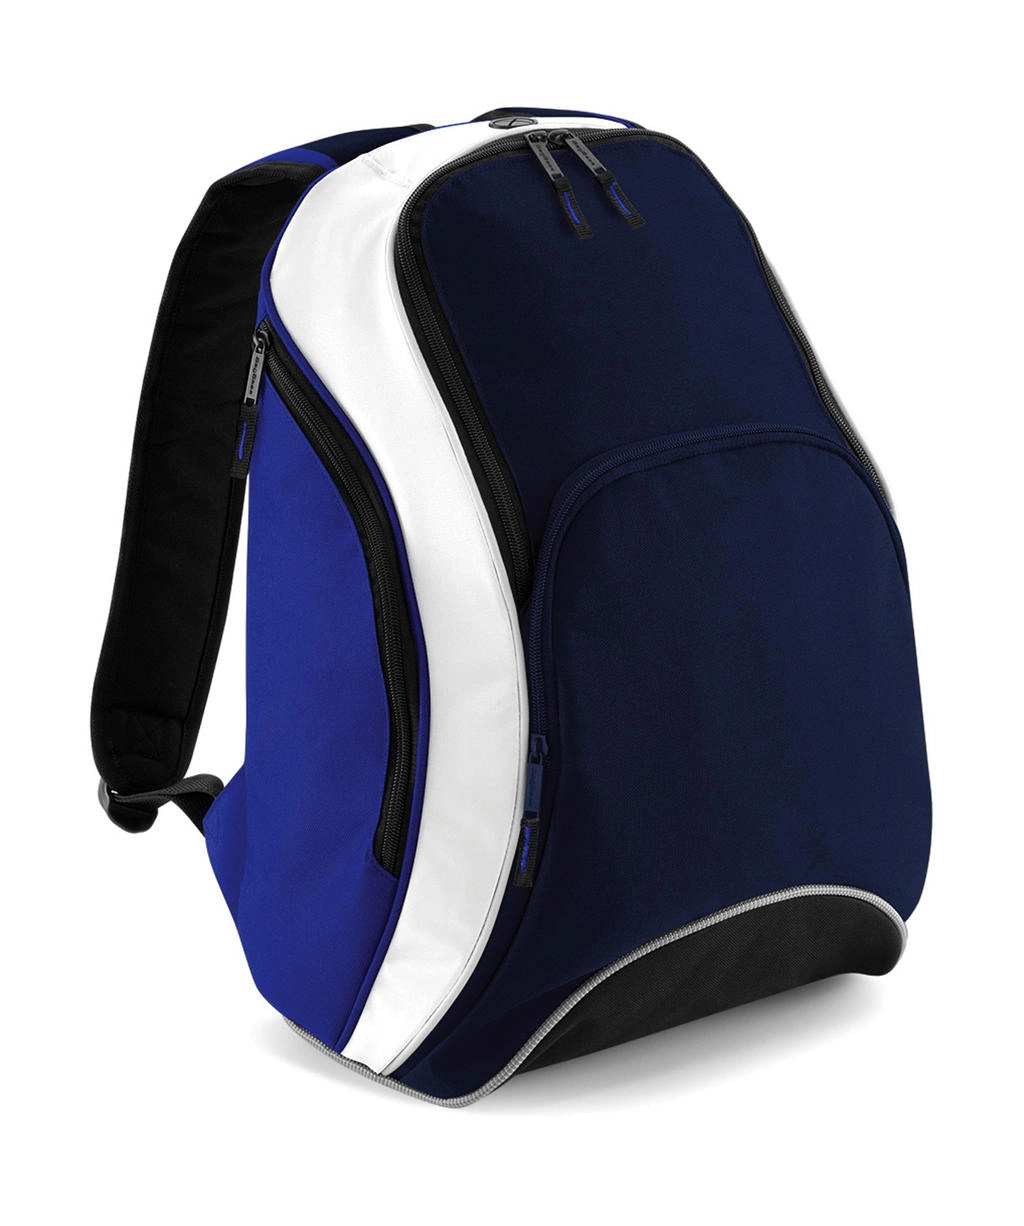 Teamwear Backpack zum Besticken und Bedrucken in der Farbe French Navy/Bright Royal/White mit Ihren Logo, Schriftzug oder Motiv.